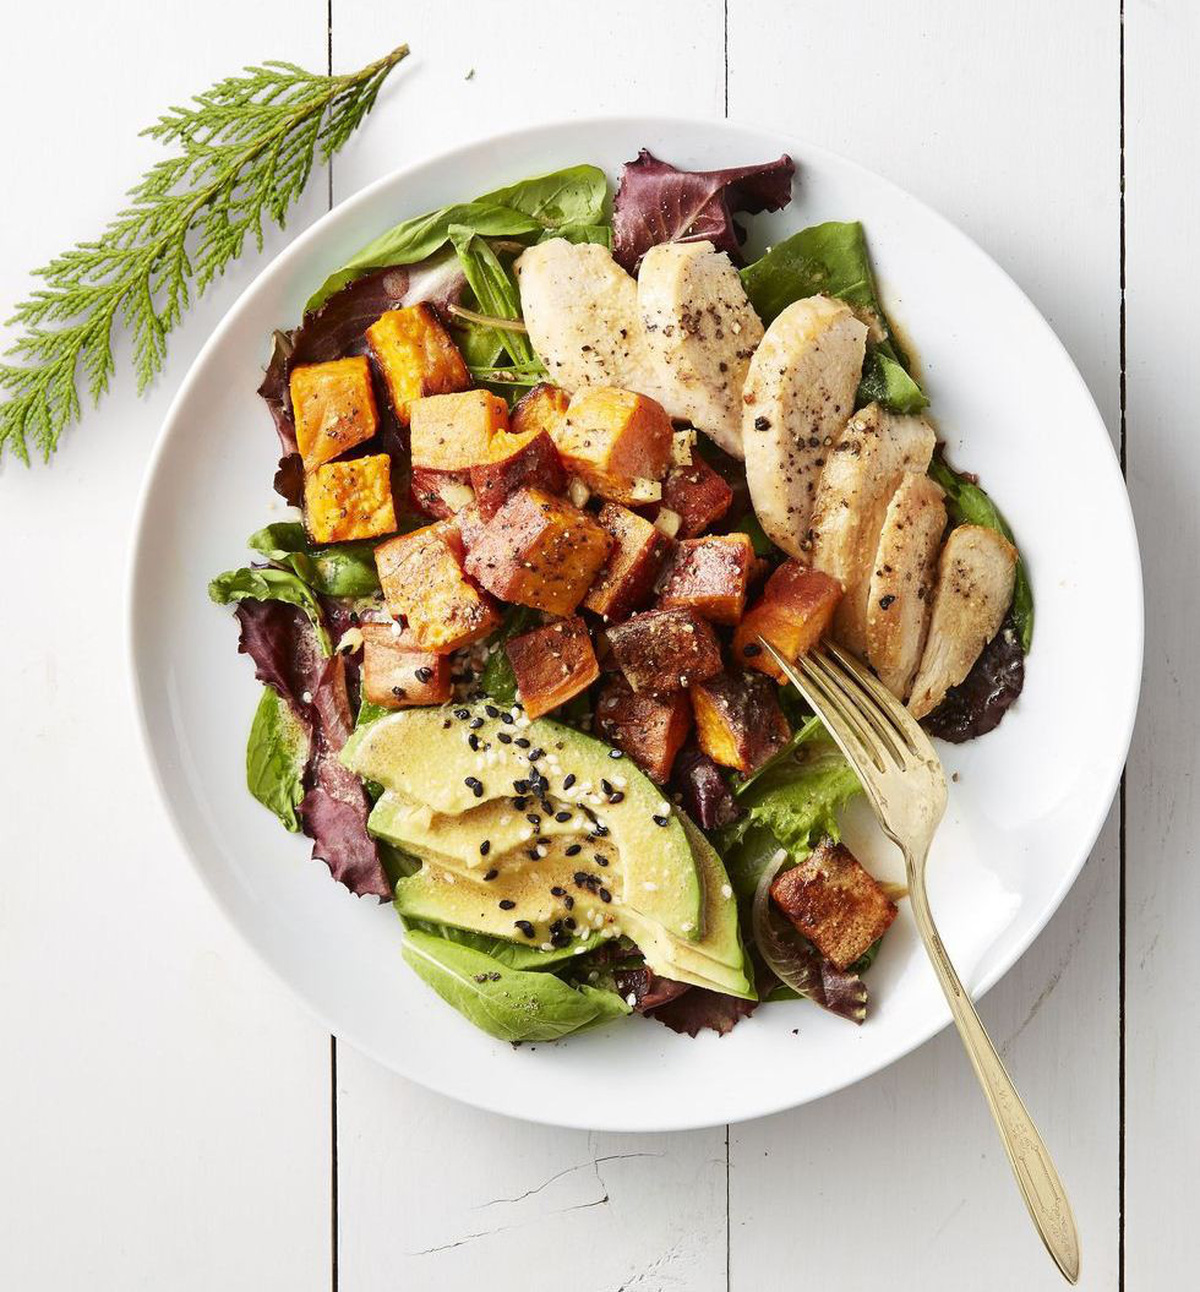 Món salad ức gà bổ dưỡng thích hợp cho người muốn giảm cân